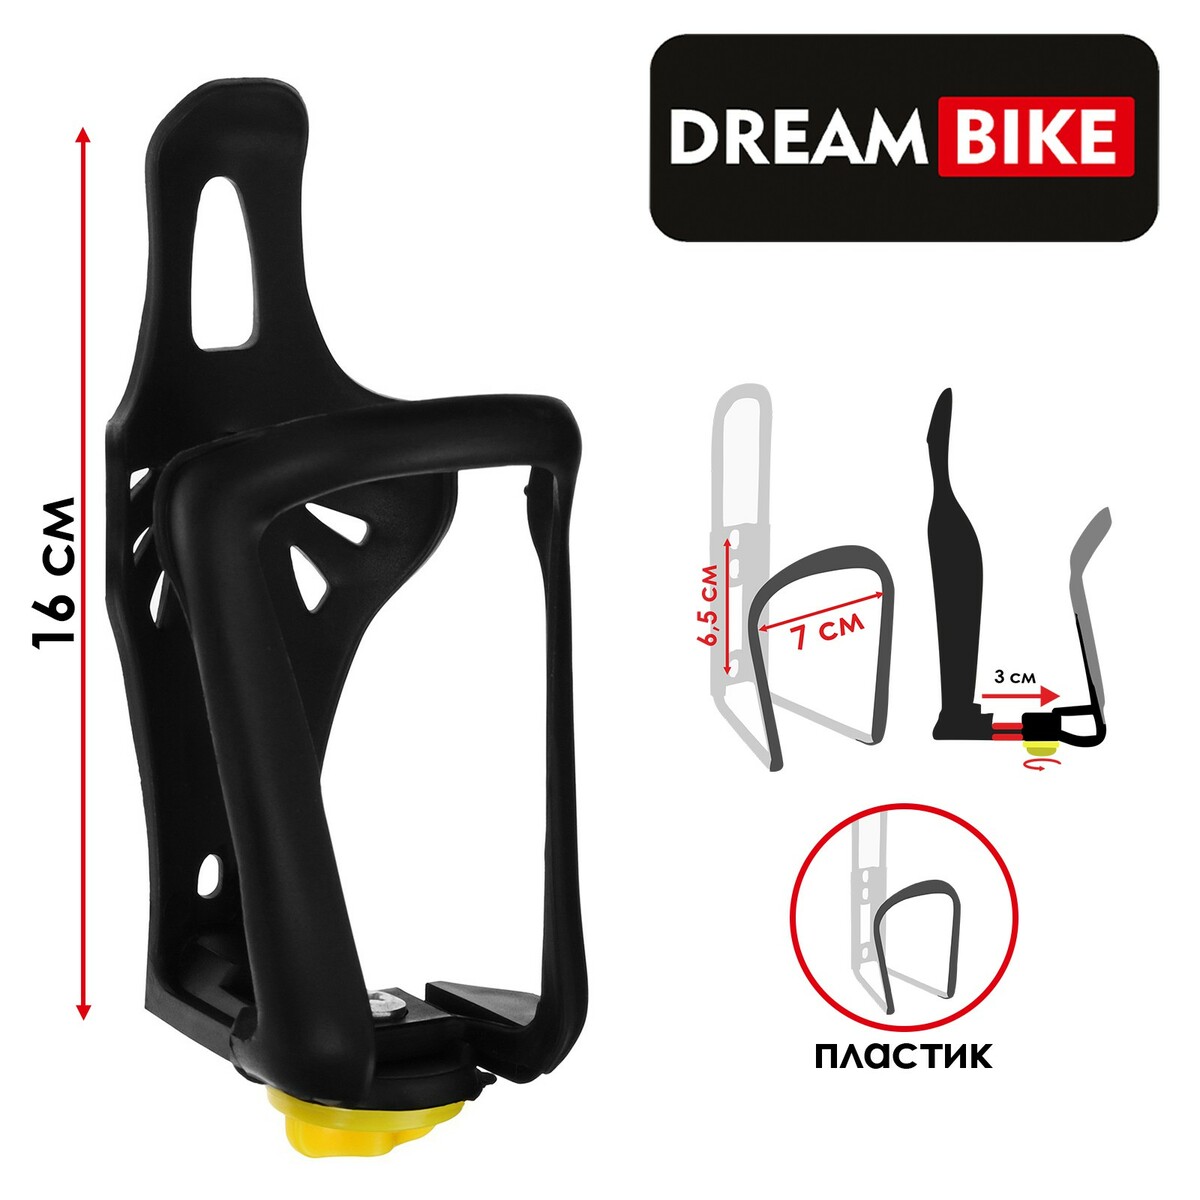 Флягодержатель dream bike, пластик, цвет черный, без крепежных болтов